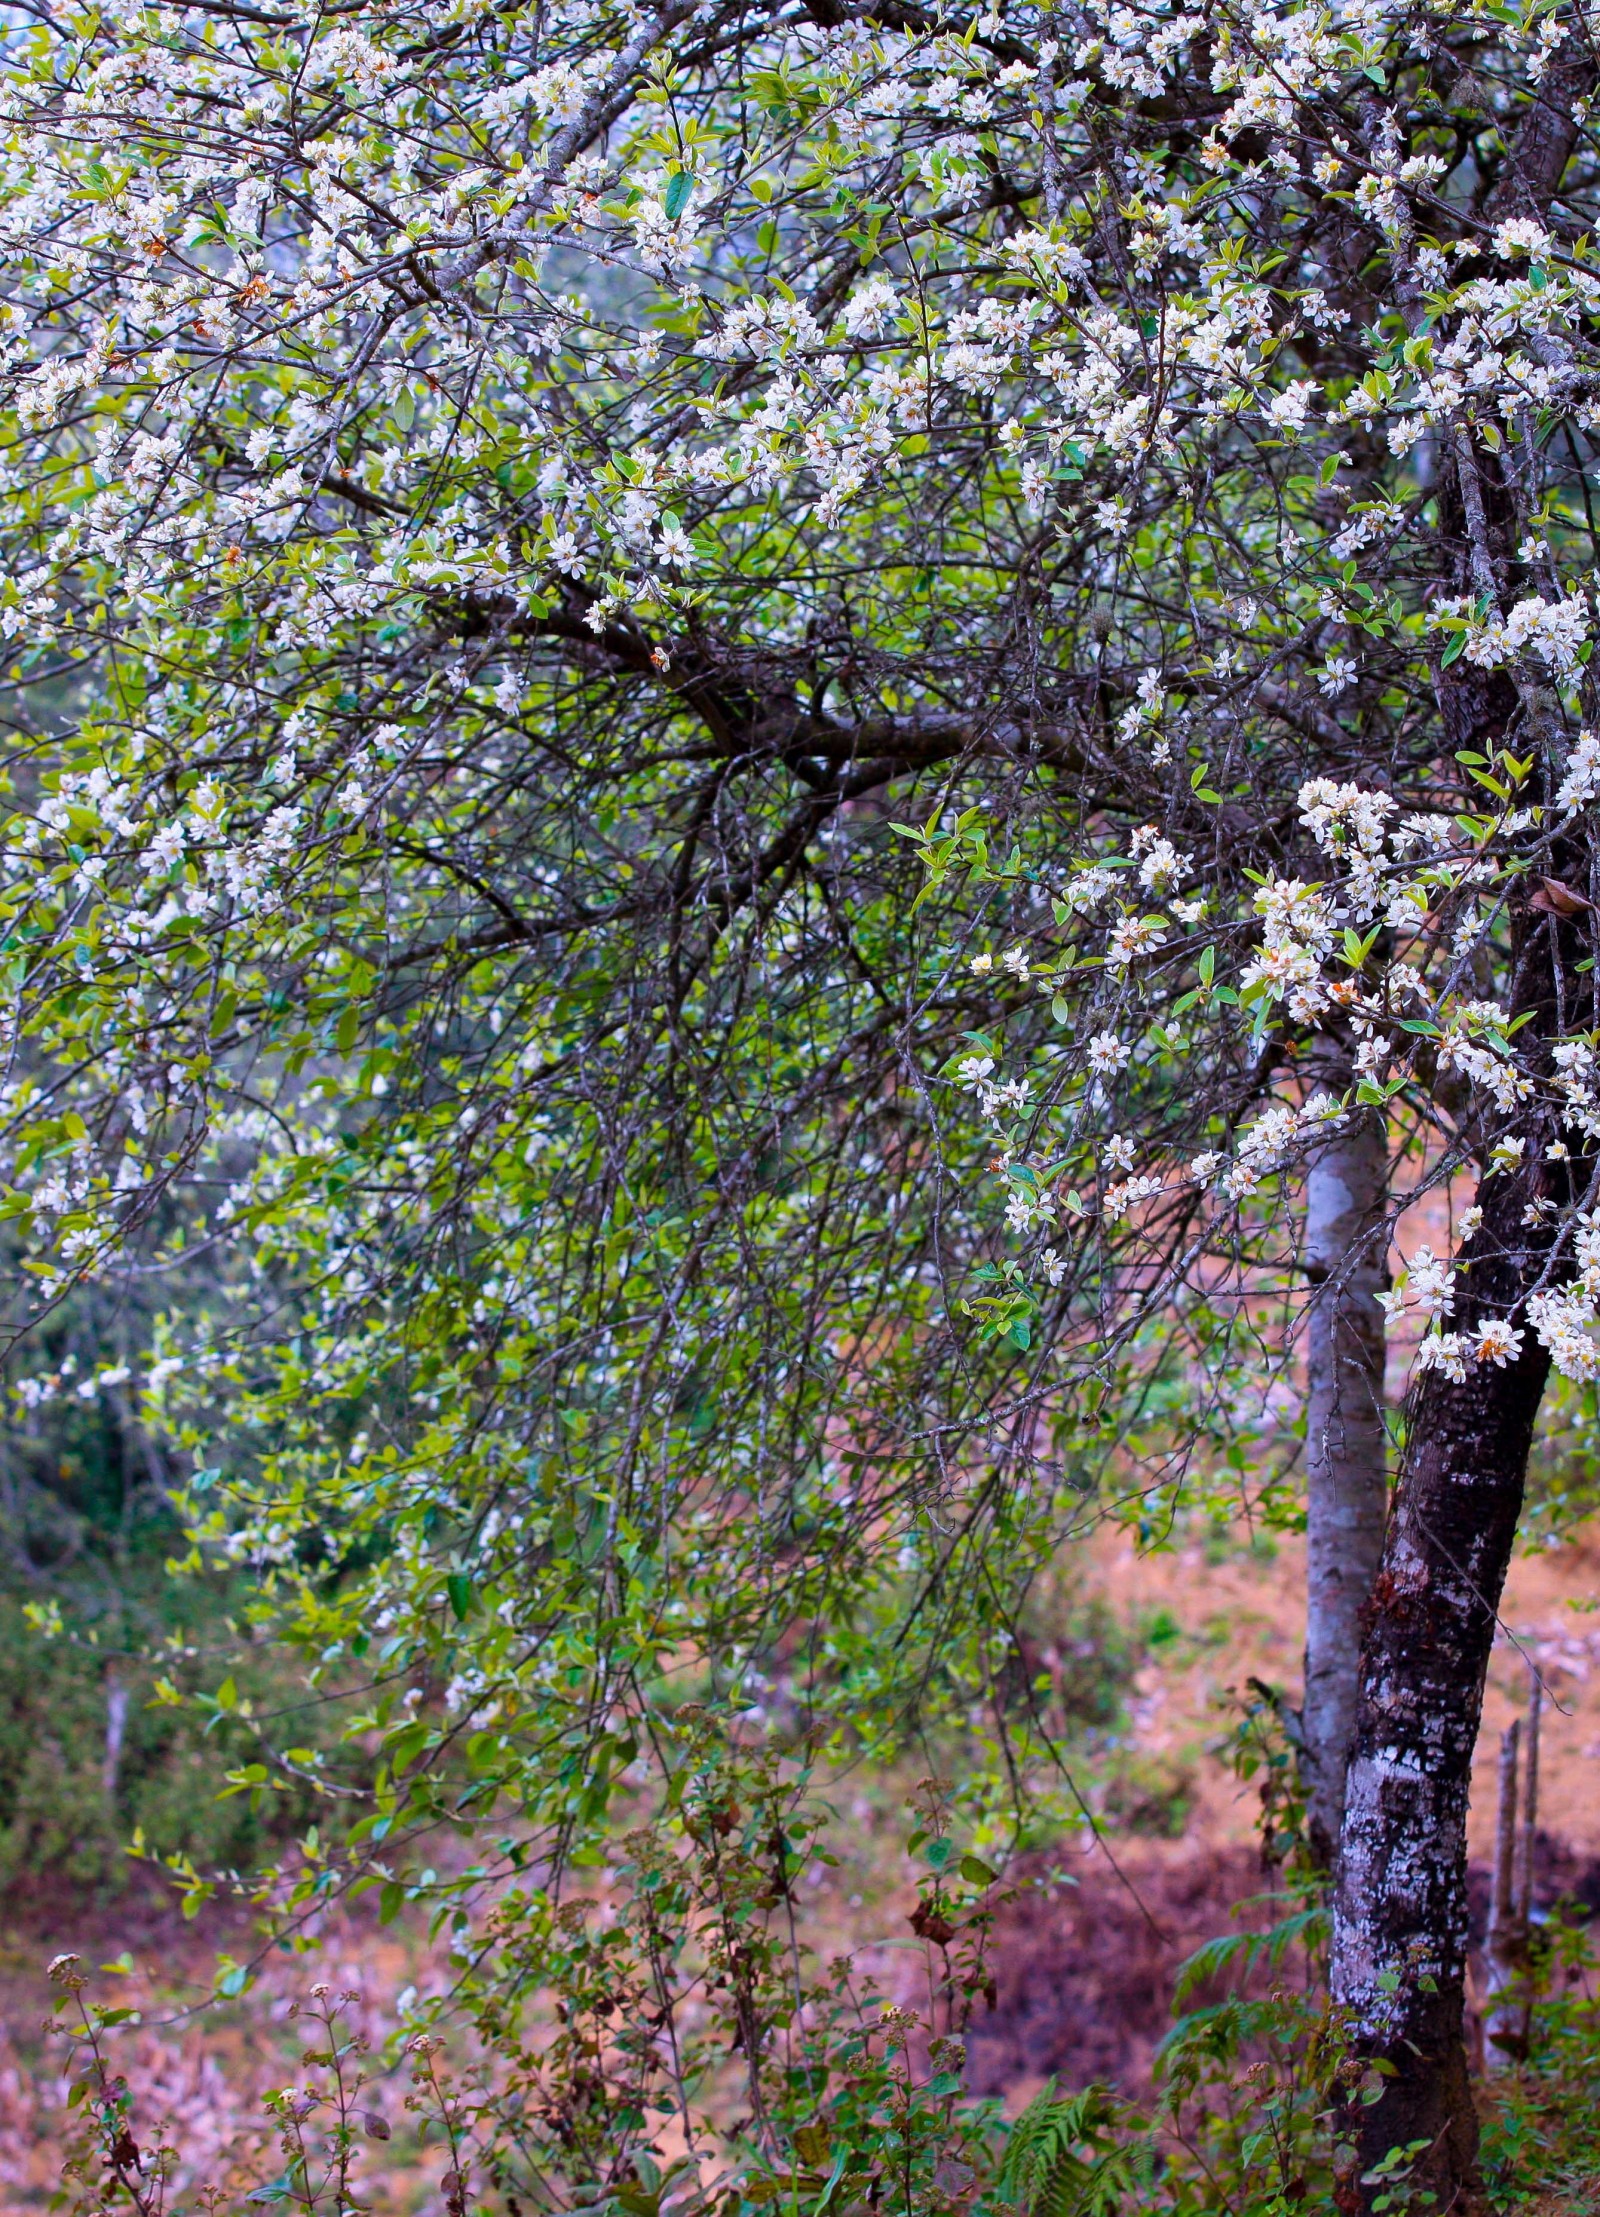 Dưới xuôi, thời gian đo bằng công việc, bằng tuần, bằng tháng còn trên những đỉnh núi cao ở Xím Vàng, nhịp thời gian tính bằng những ngày cây táo mèo ra hoa trắng và những ngày trổ quả xanh.